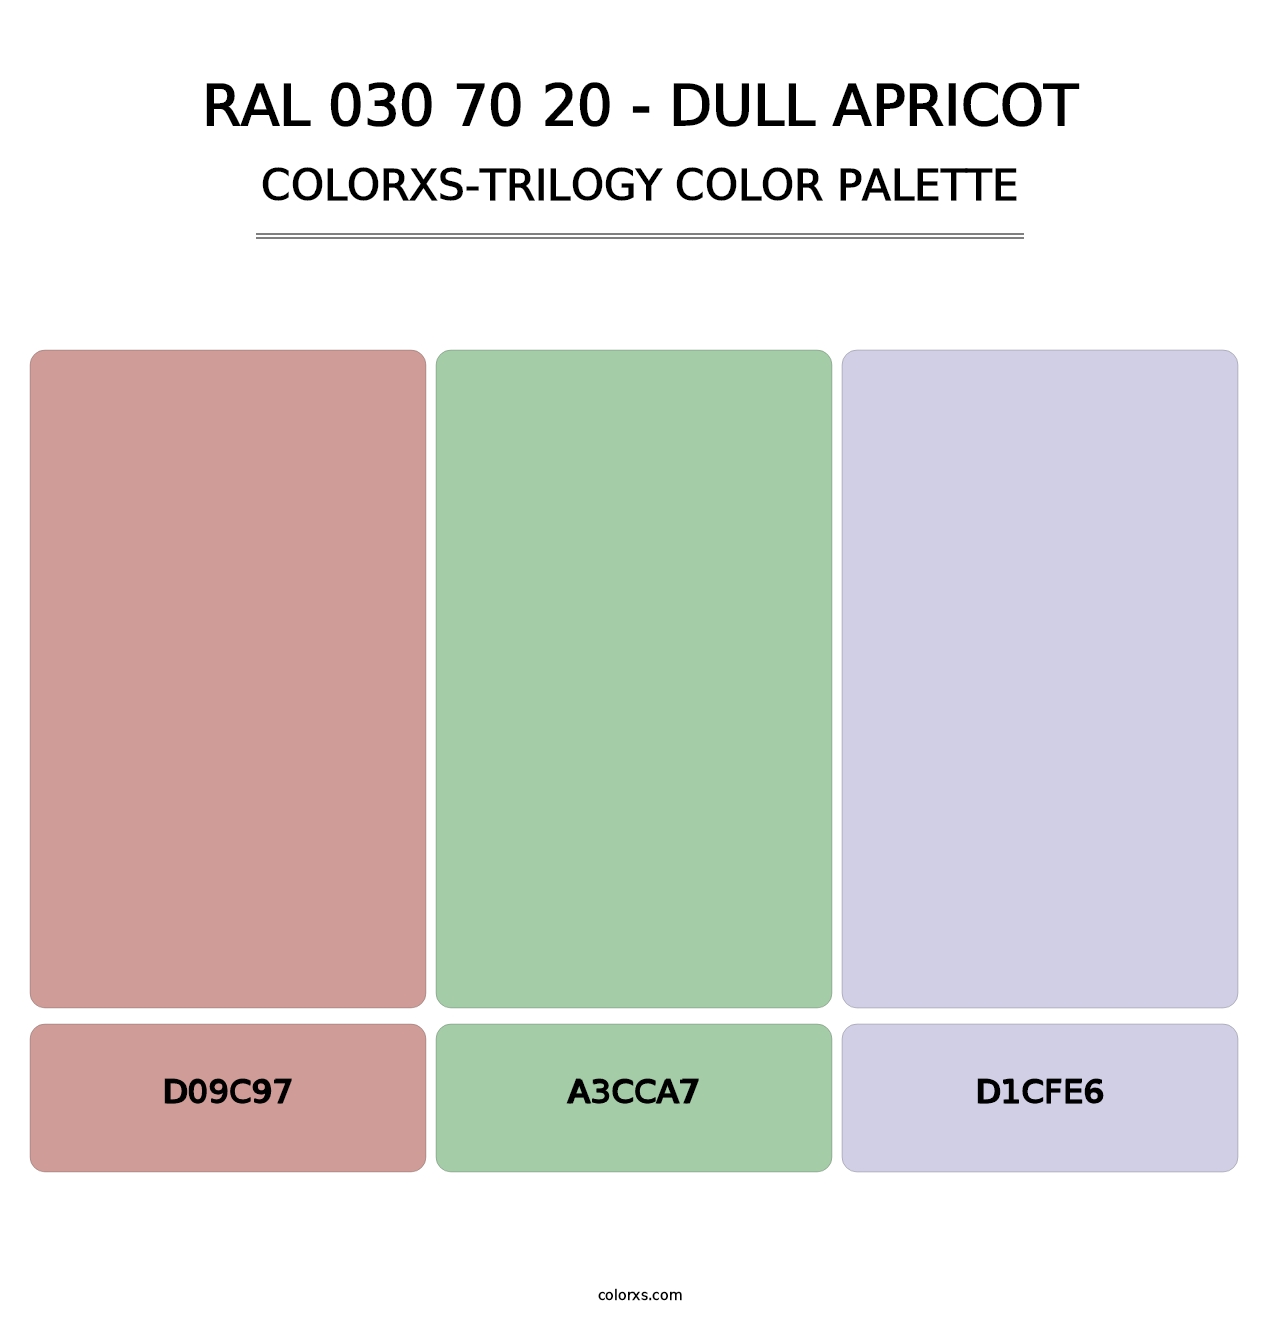 RAL 030 70 20 - Dull Apricot - Colorxs Trilogy Palette